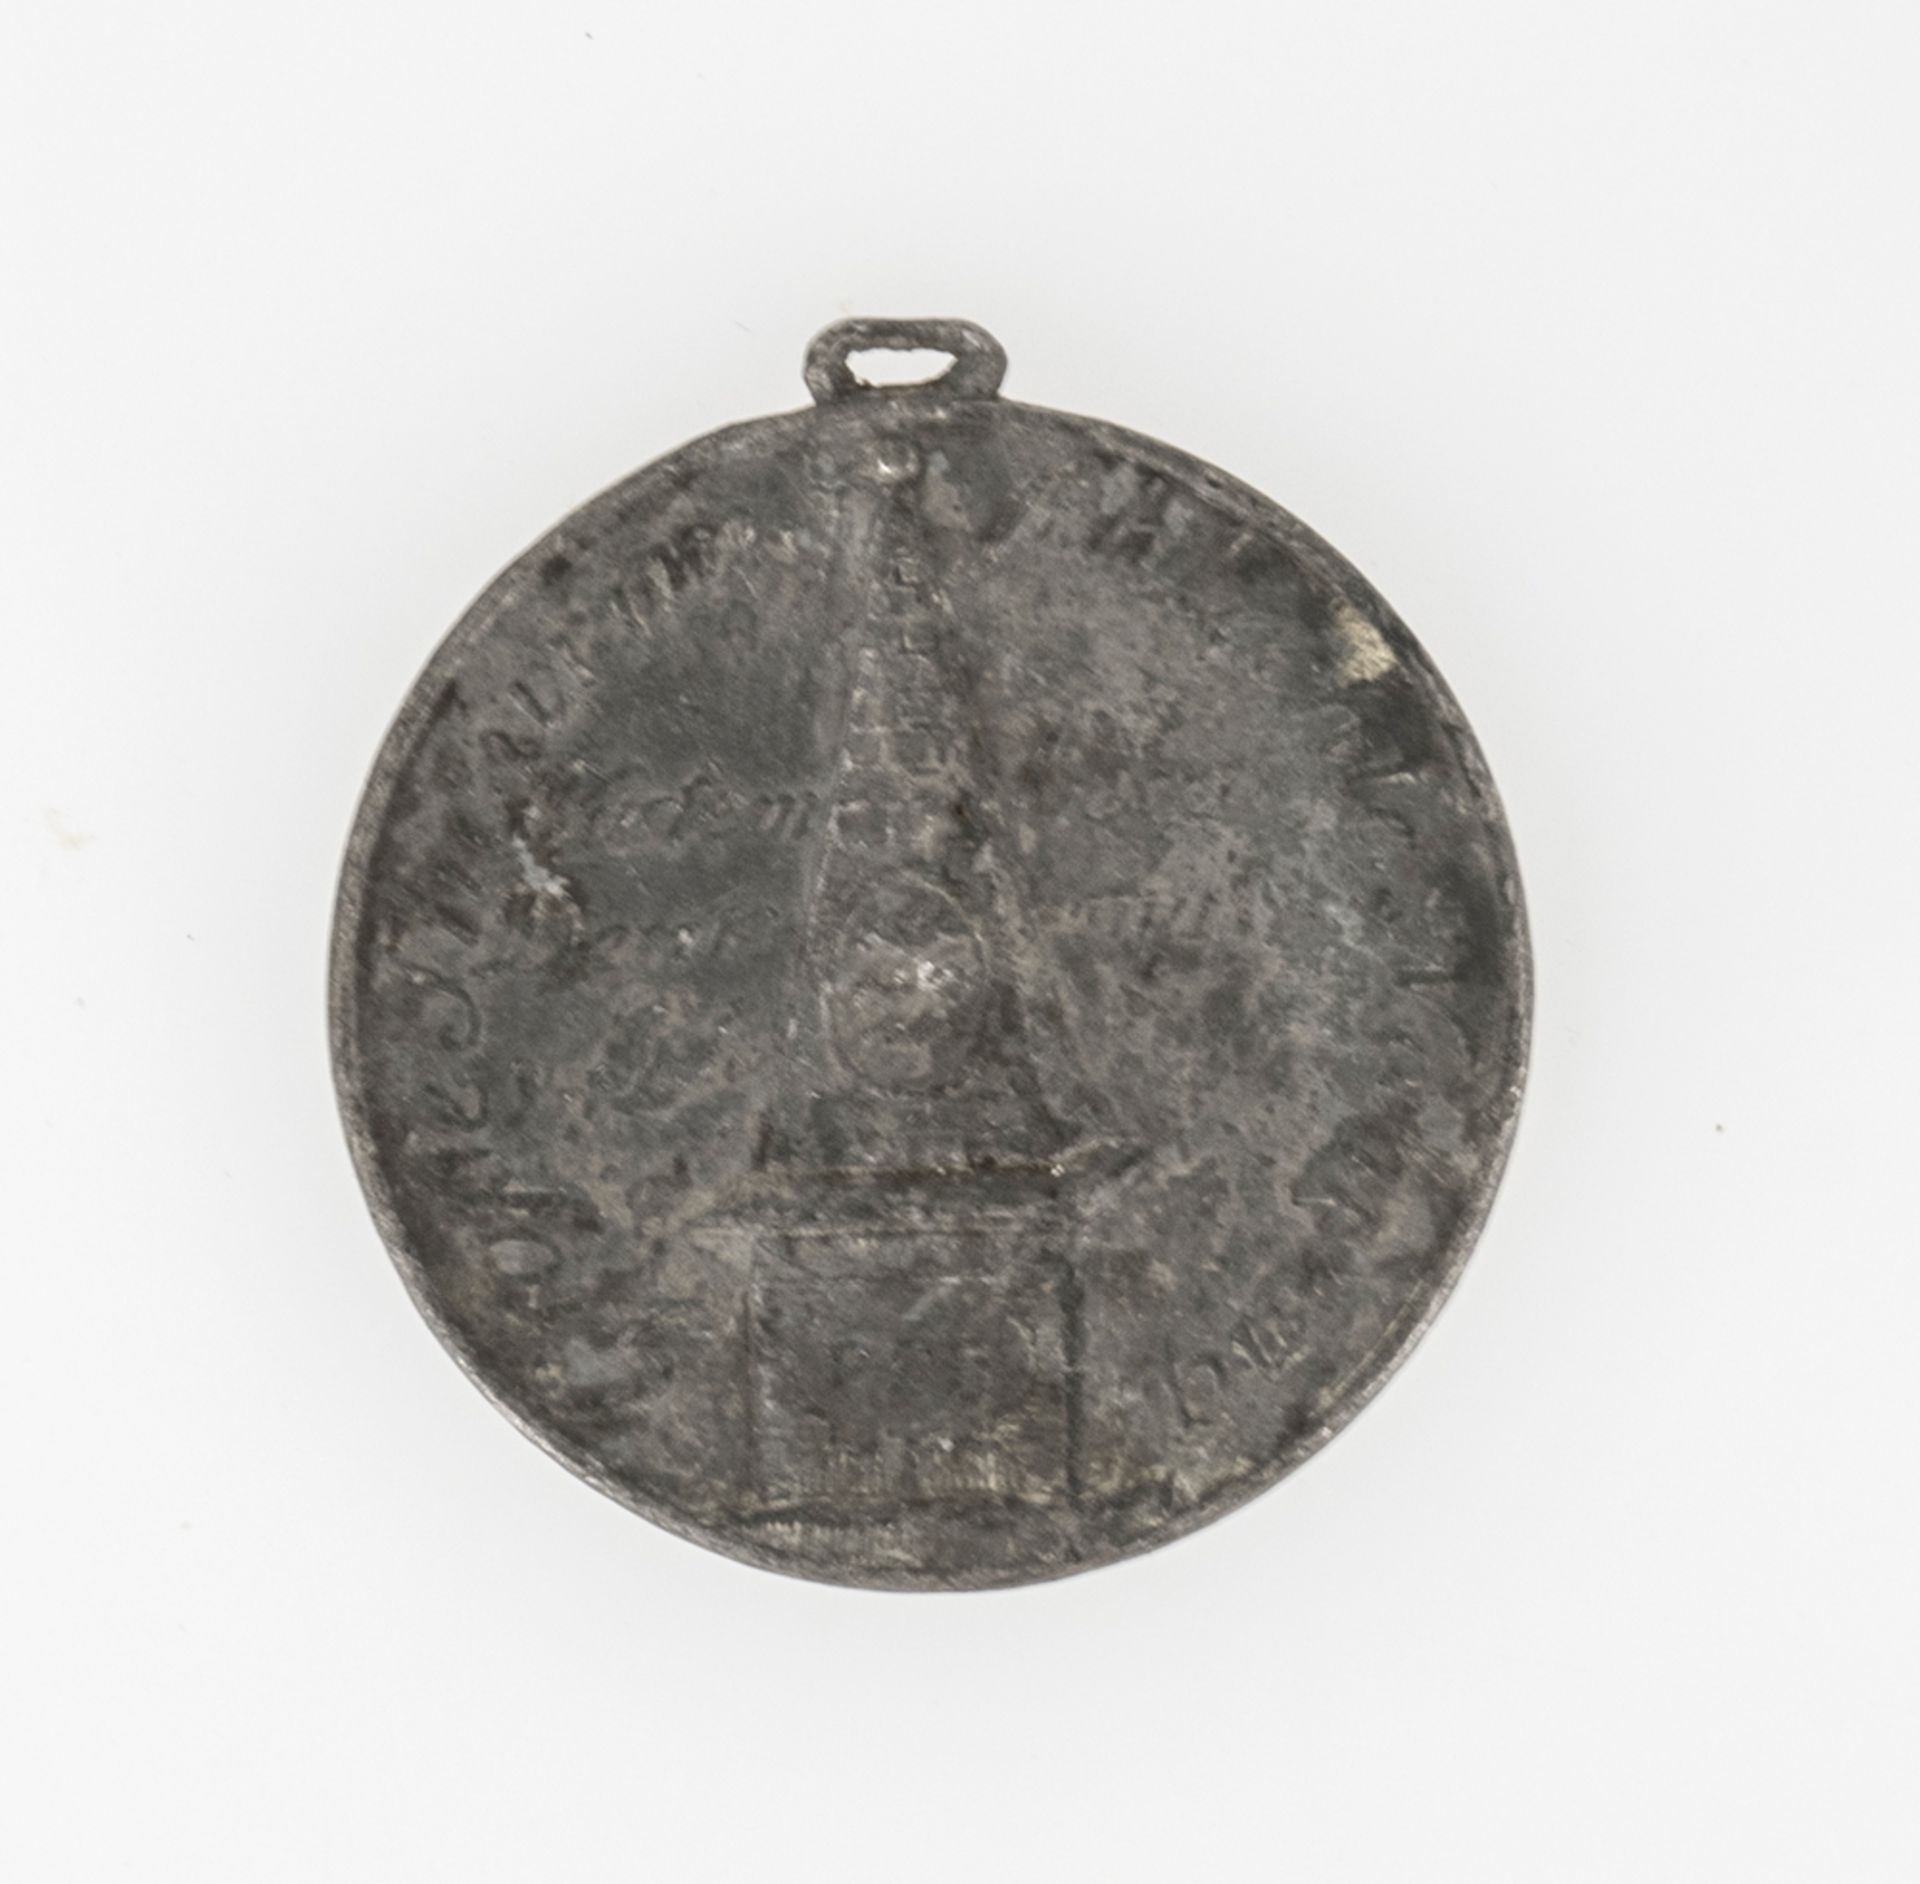 Königreich Württemberg 1817, tragbare Medaille auf die Hungersnot 1816/17 und den Erntesegen 1817.